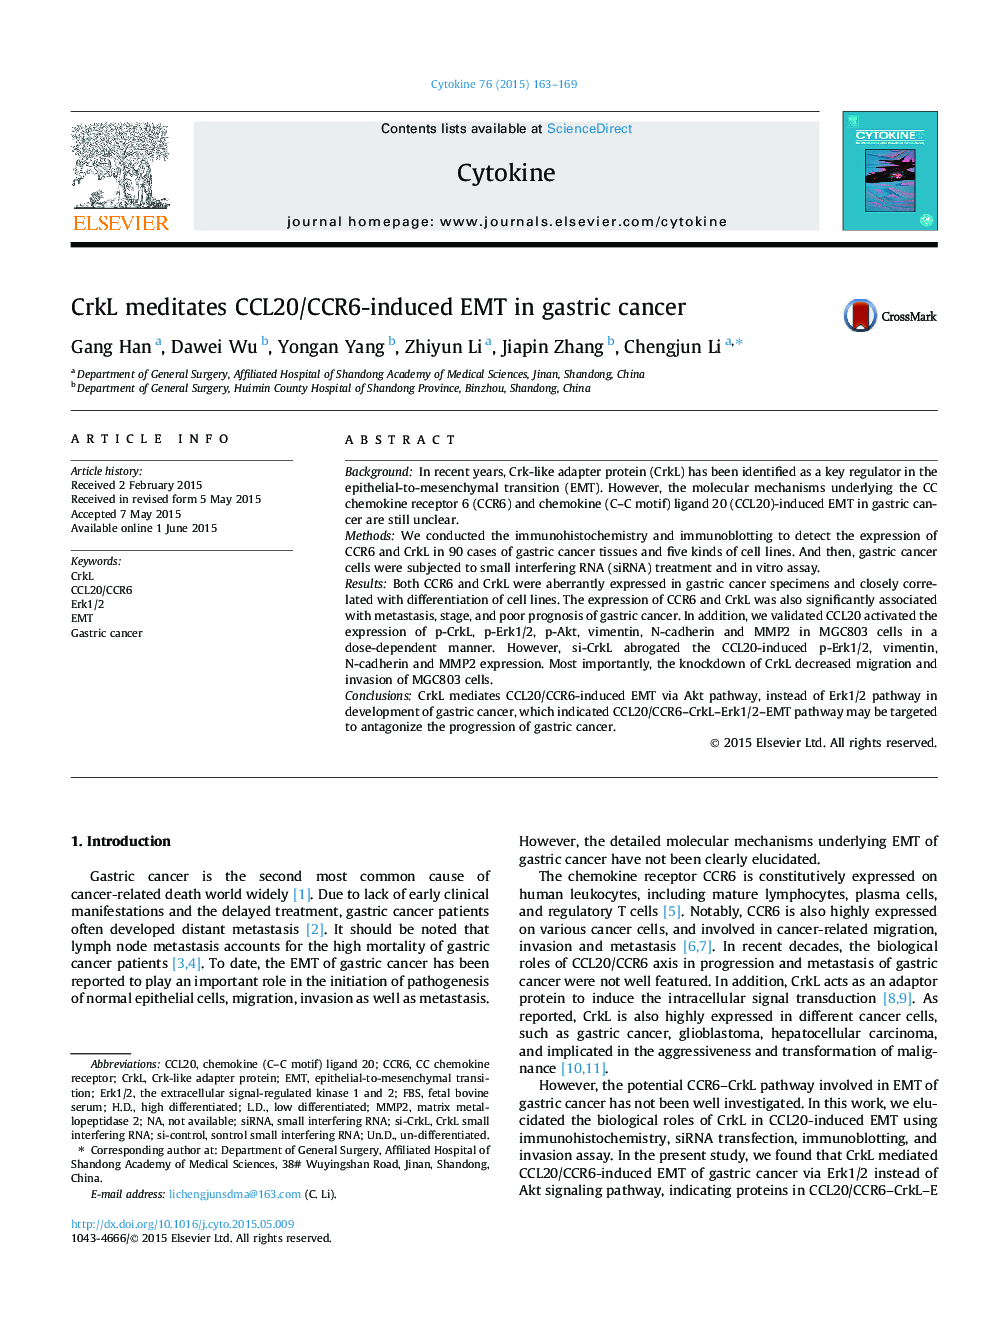 CrkL meditates CCL20/CCR6-induced EMT in gastric cancer